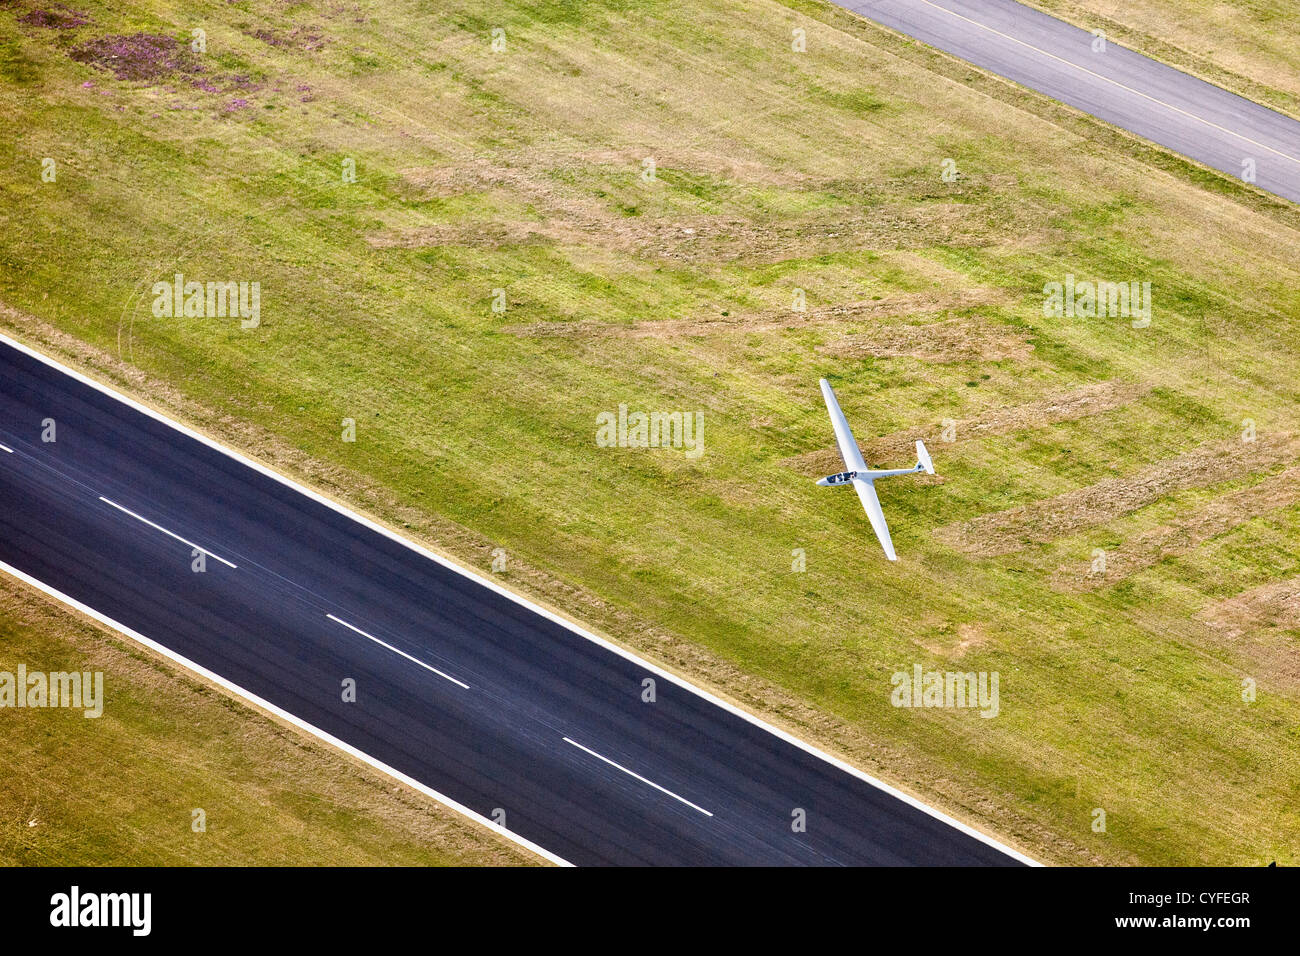 Die Niederlande, Hoogerheide, Flughafen Woensdrecht. Segelflugzeug vorbei Landebahn. Luft. Stockfoto